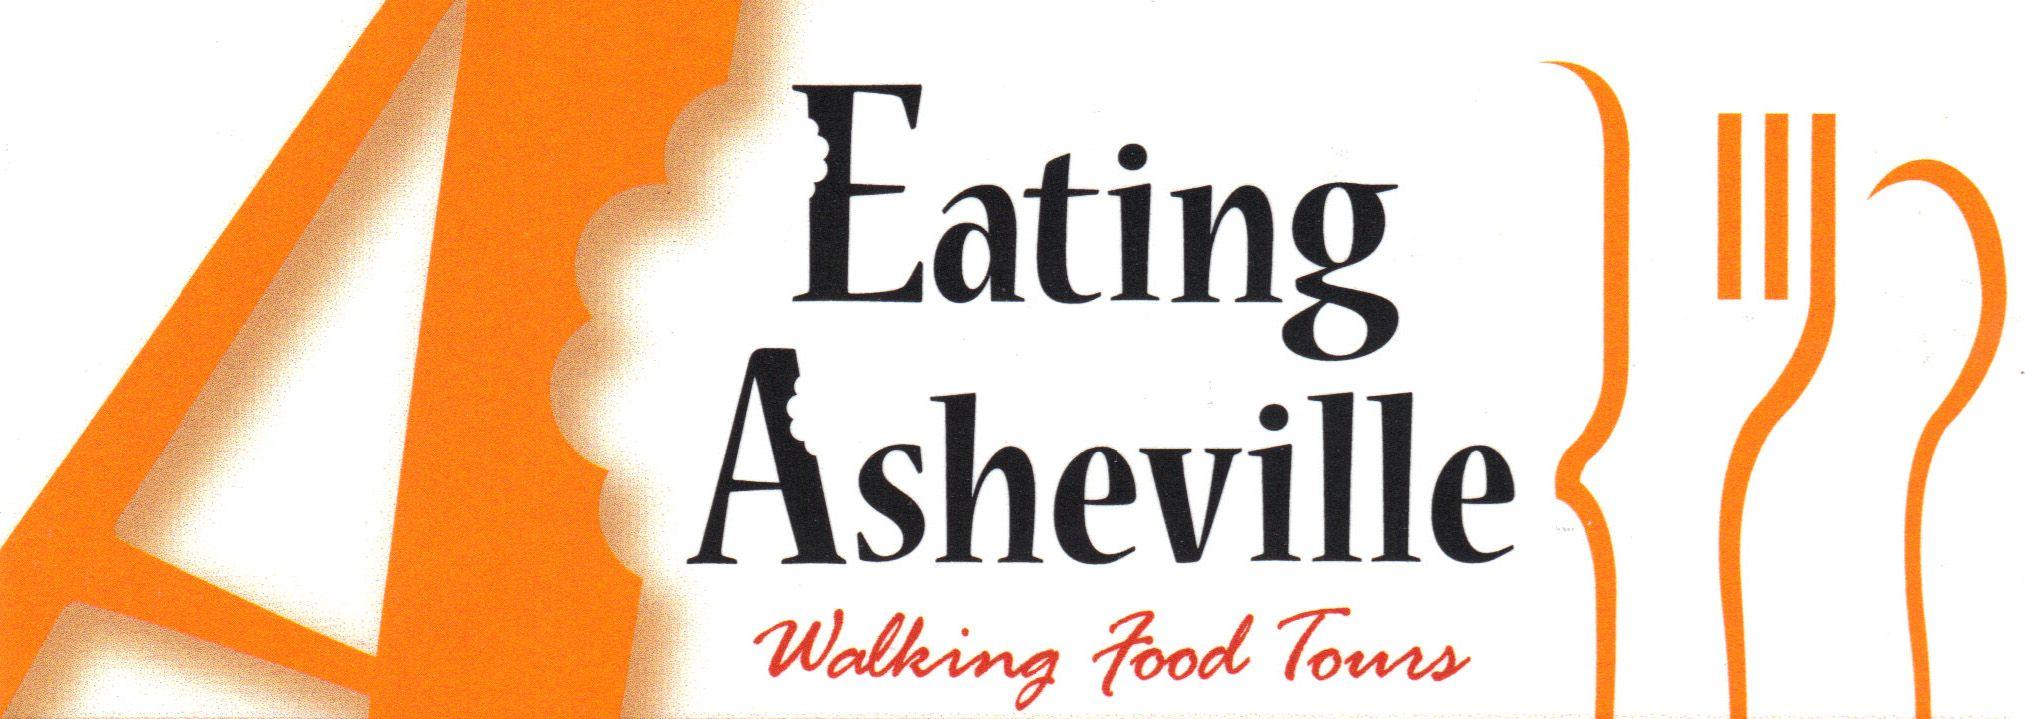 Asheville Logo - Eating Asheville Logo Mansion Bed and Breakfast Inn